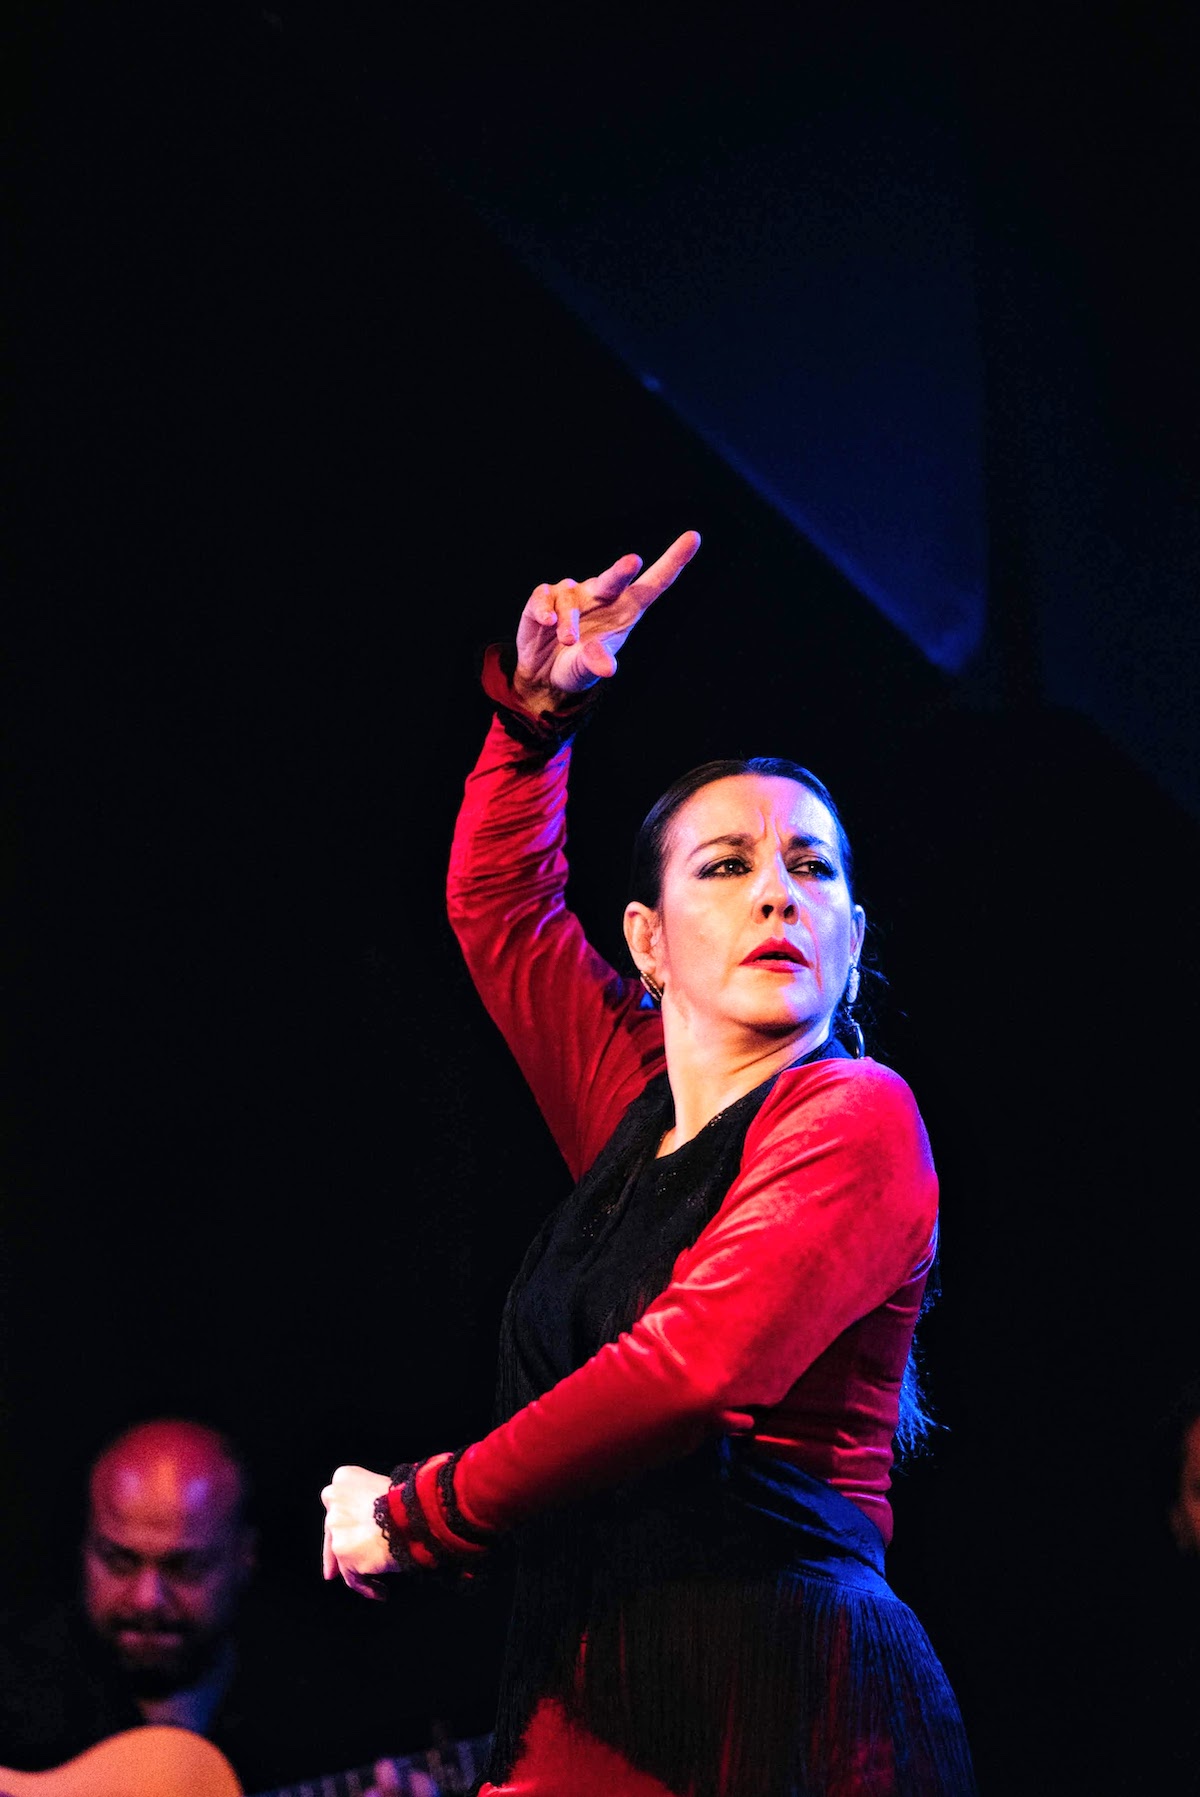 Bailaora de flamenco con vestido rojo actuando.